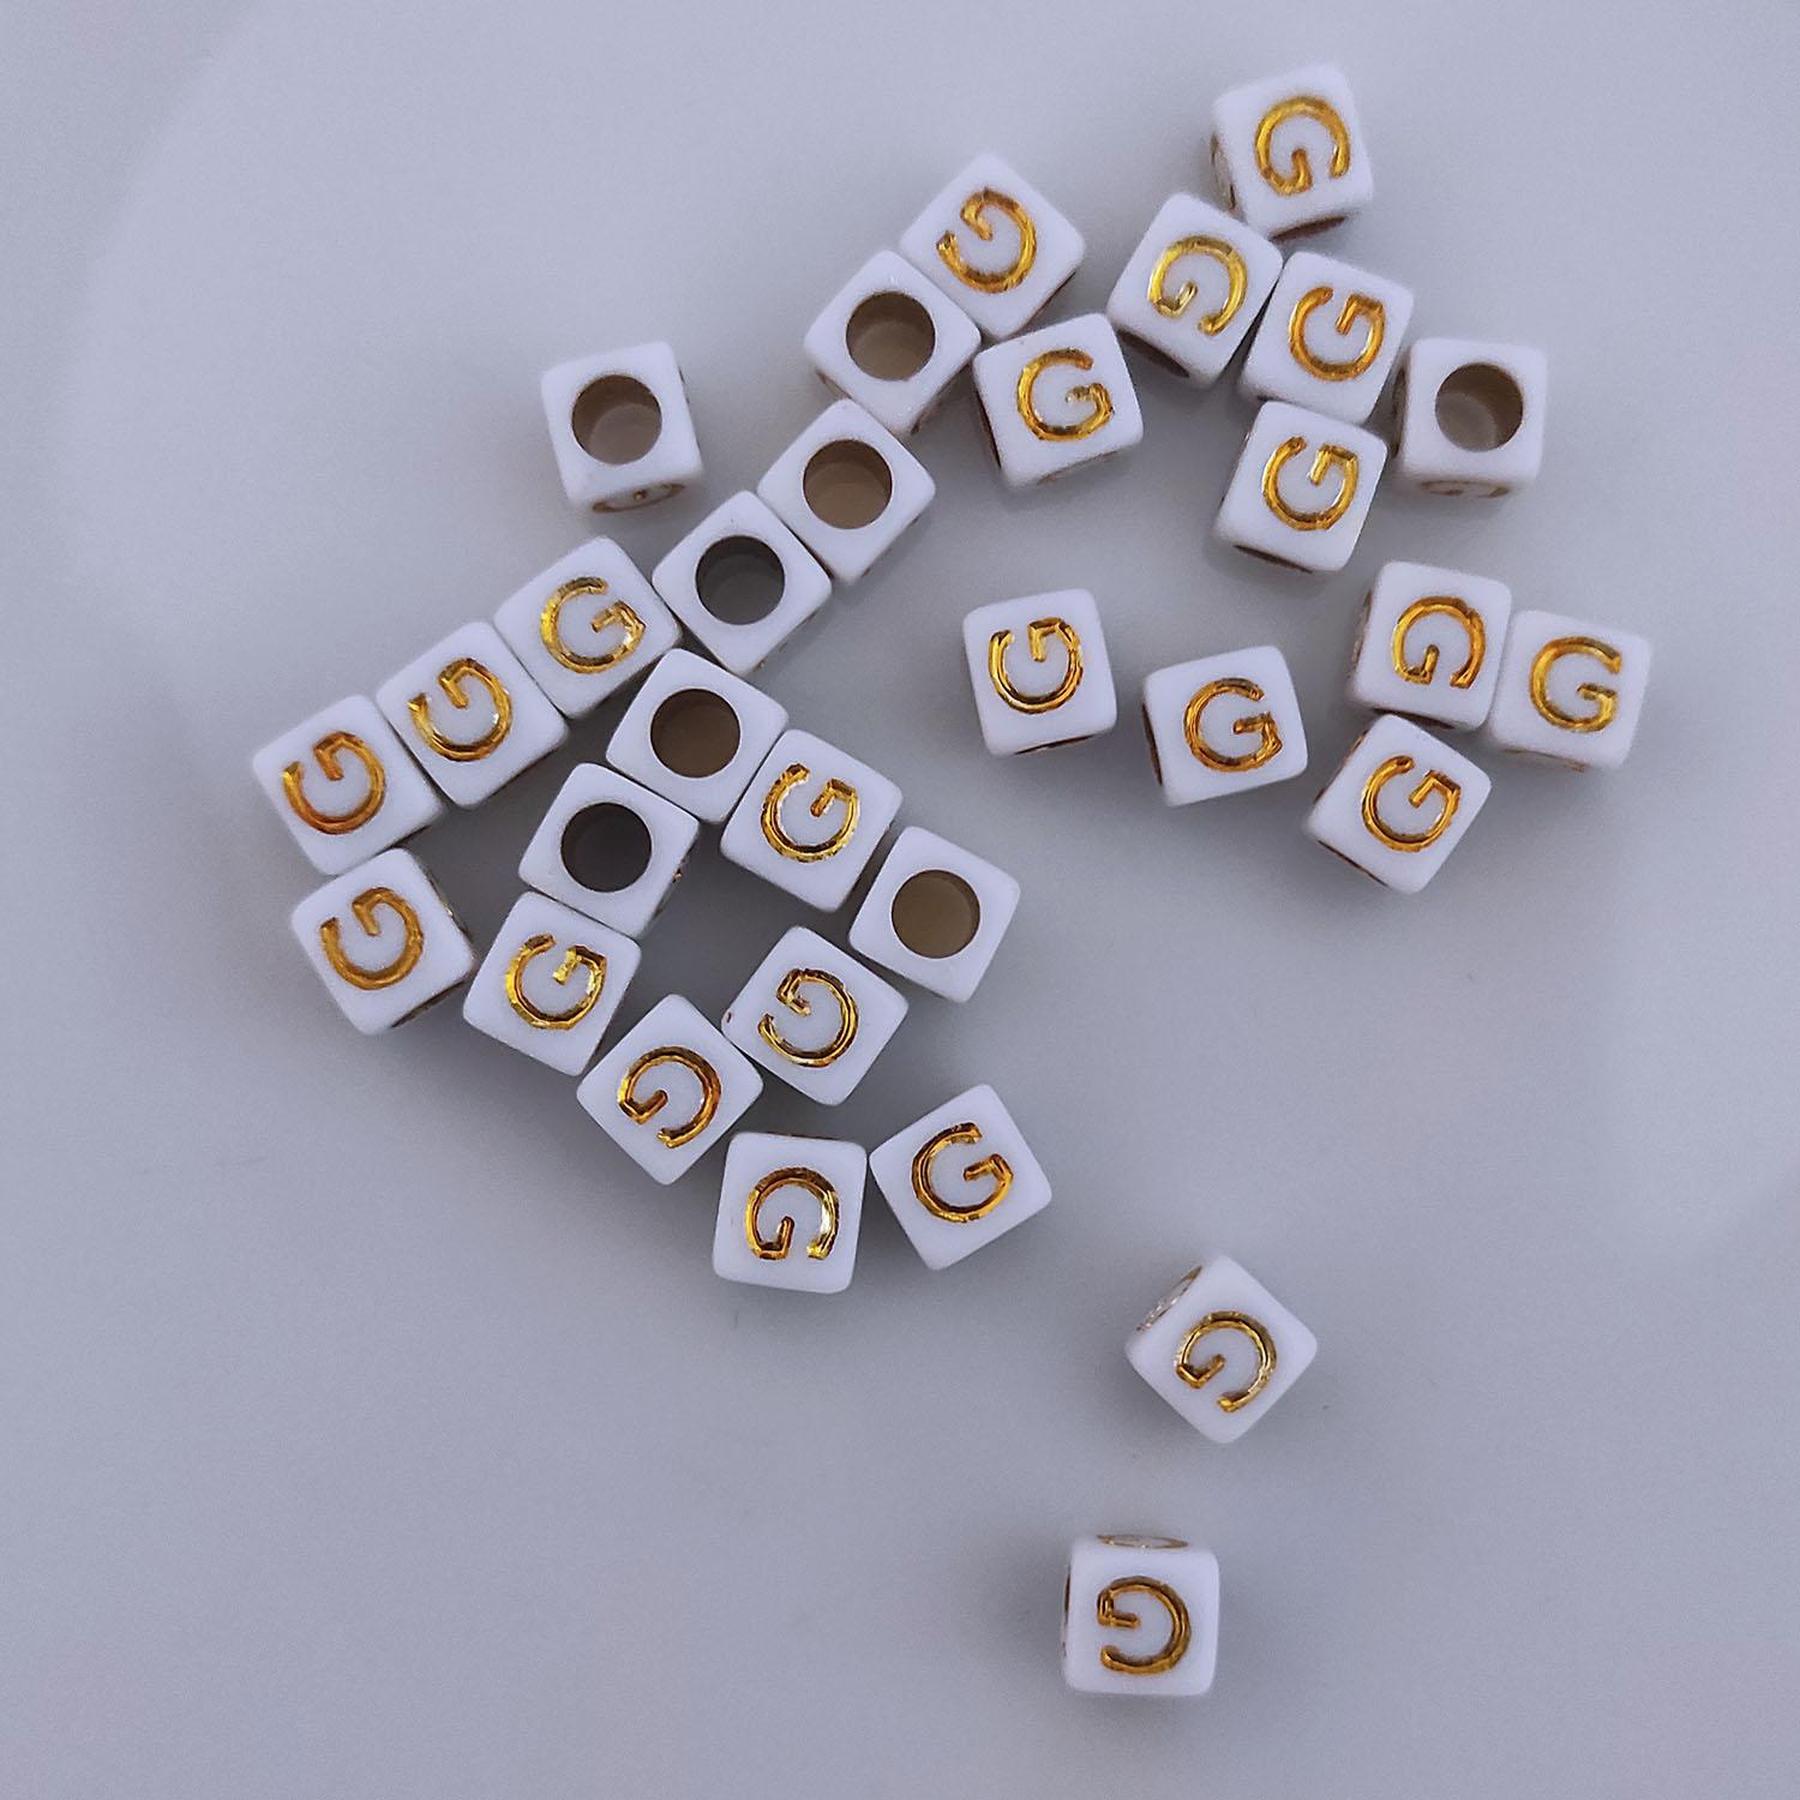 Buchstaben Perlen, 30 Stück, 6x6 mm, weiß mit gold, eckig, Buchstabe G